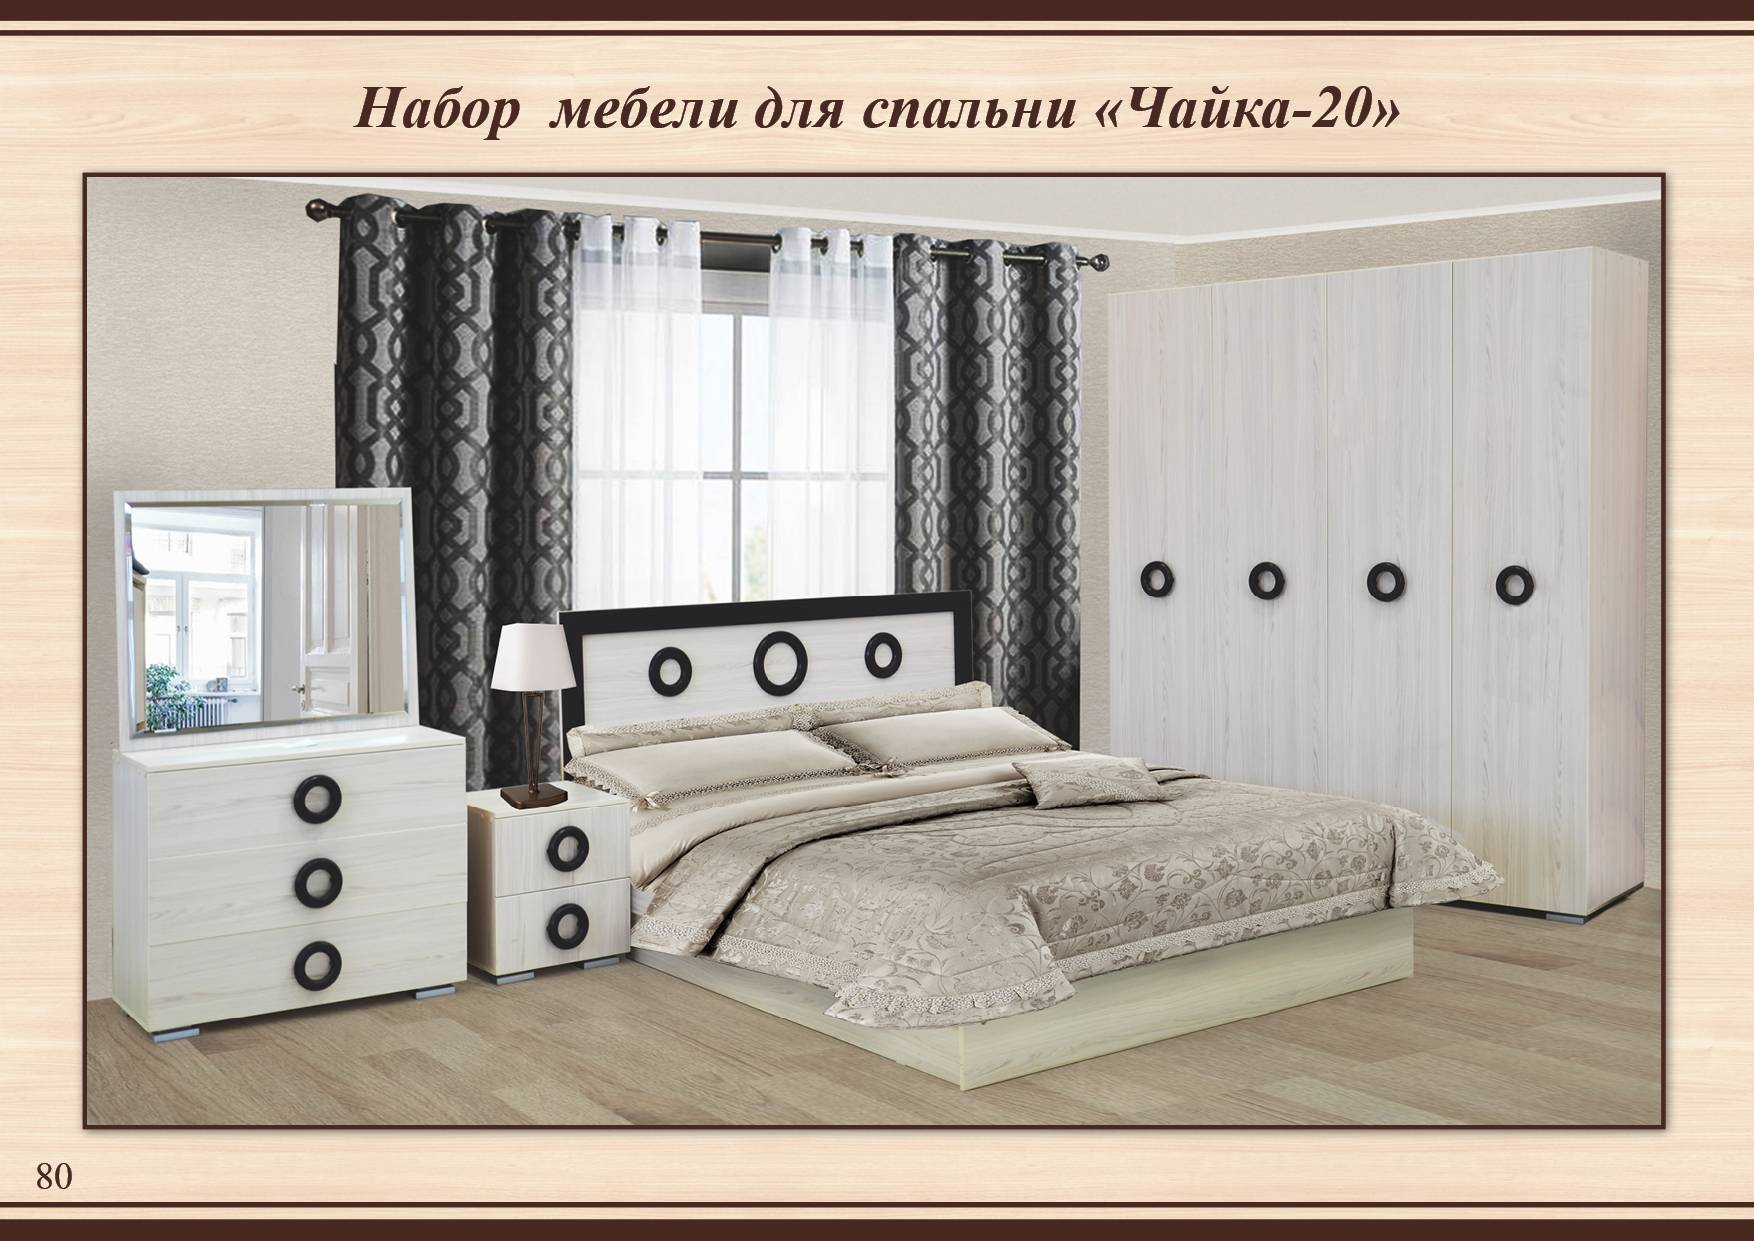 Спальня Чайка 20 с по элементам: шкаф, кровать, комод, зеркало, тумбы прикроватные